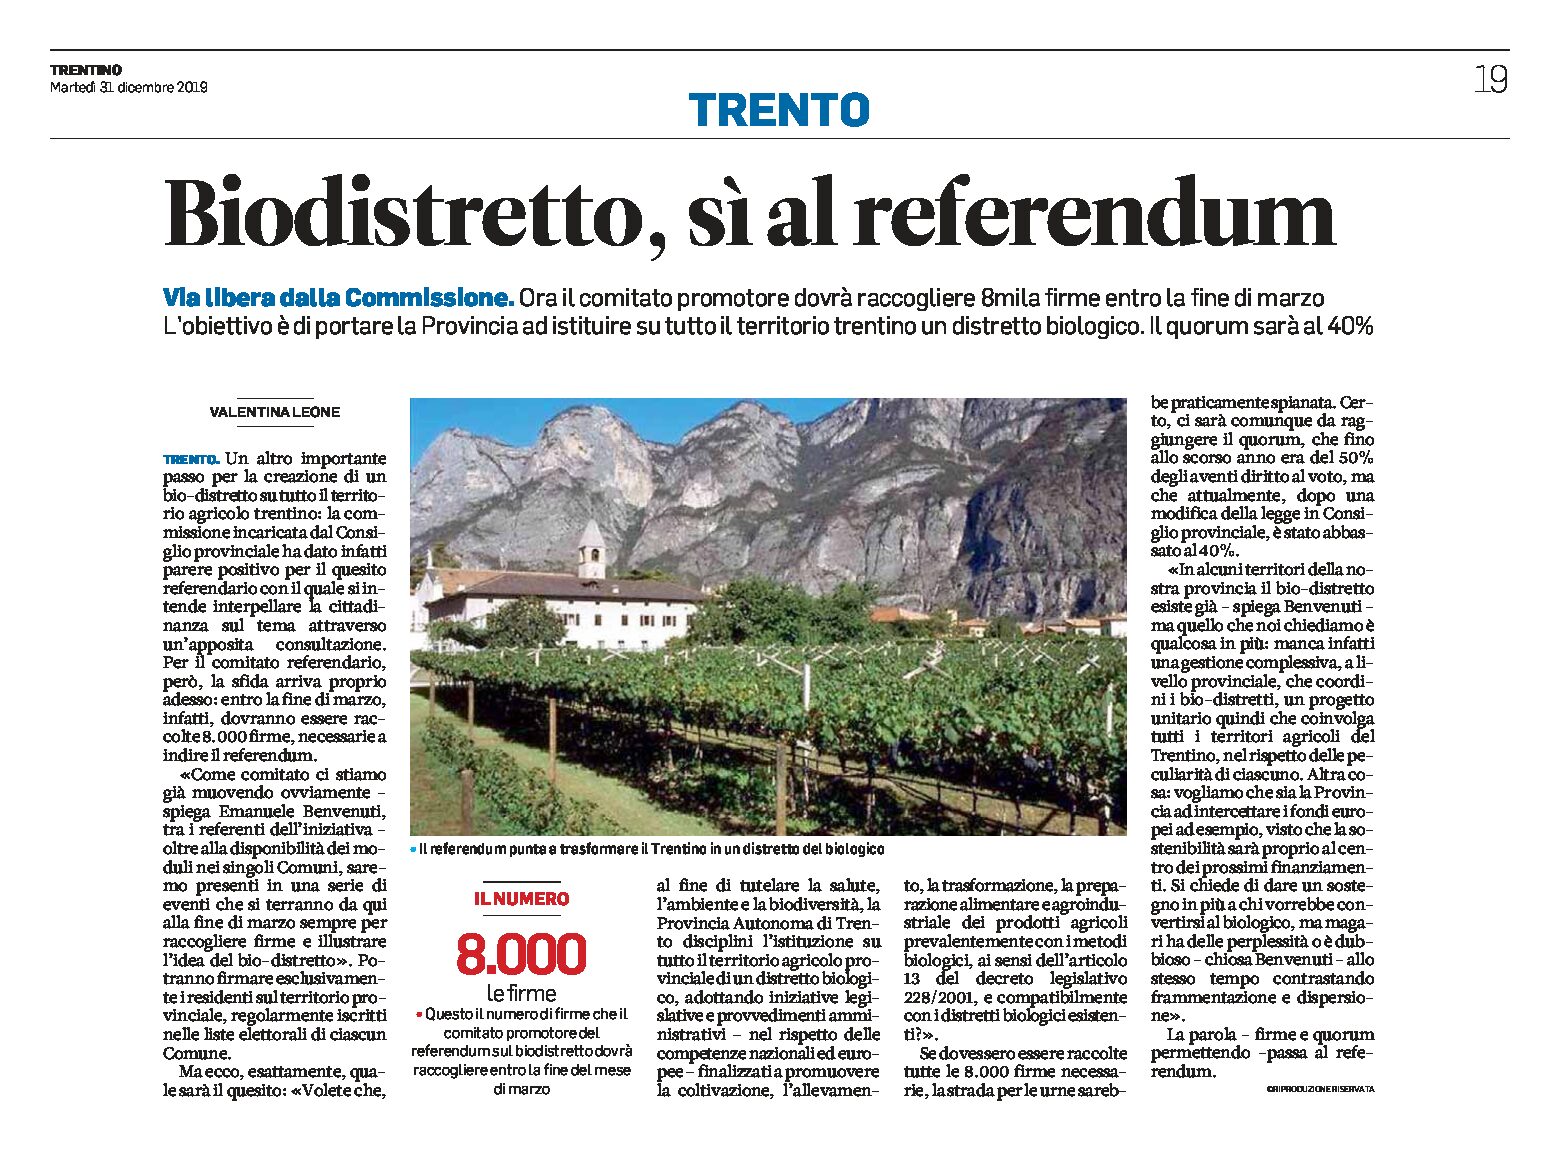 Trentino: biodistretto, sì al referendum. 8mila firme da raccogliere entro la fine di marzo